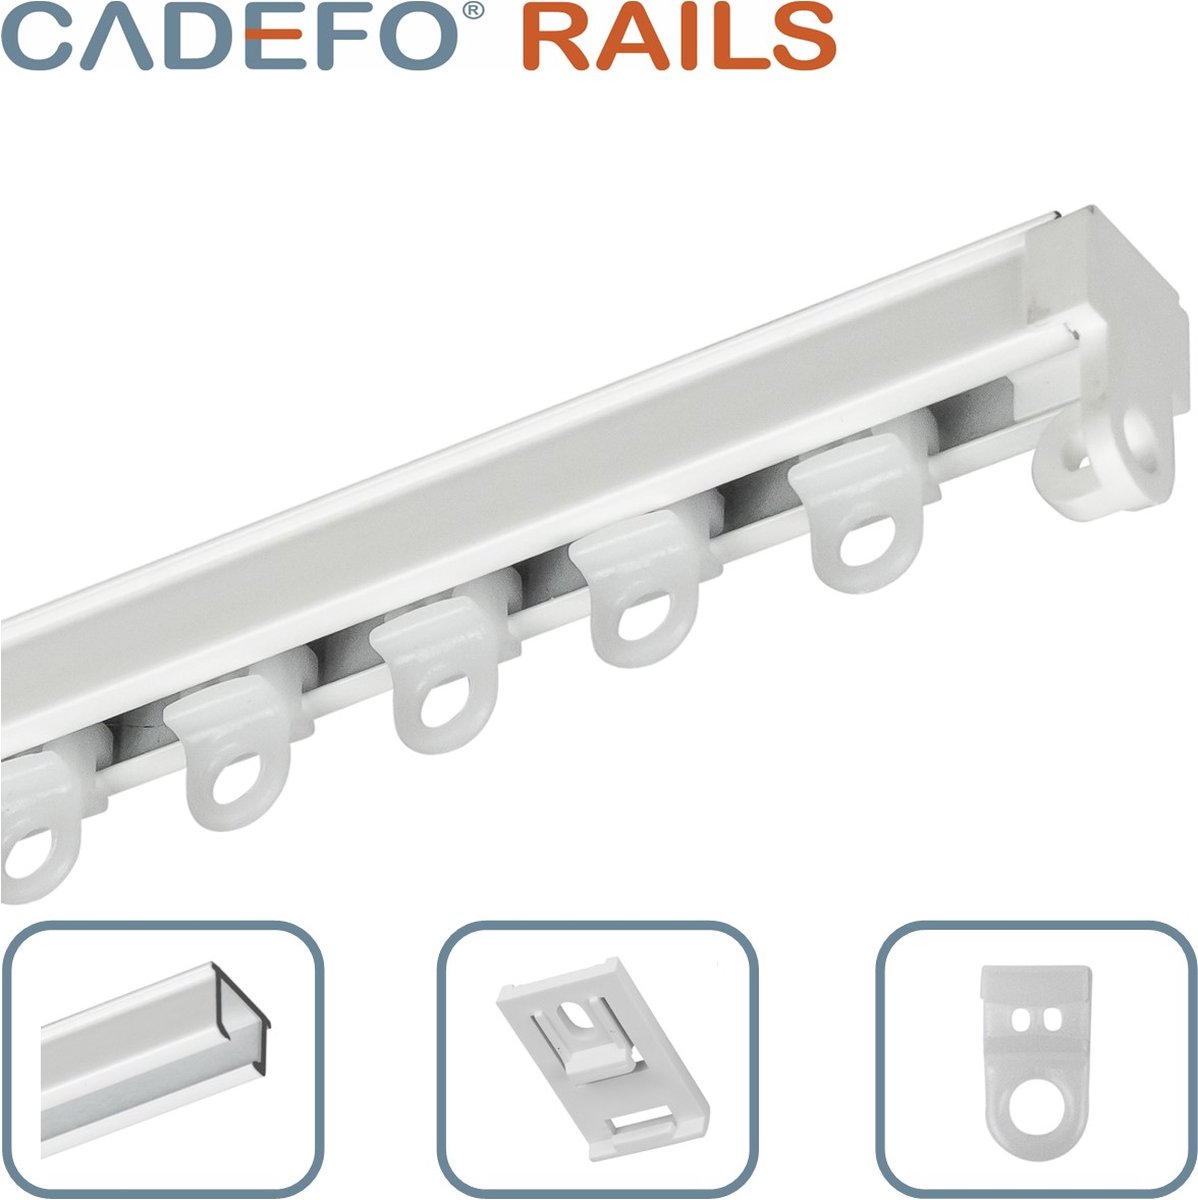 CADEFO RAILS (551 - 600 cm) Gordijnrails - Compleet op maat! - UIT 1 STUK - Leverbaar tot 6 meter - Plafondbevestiging - Lengte 594 cm